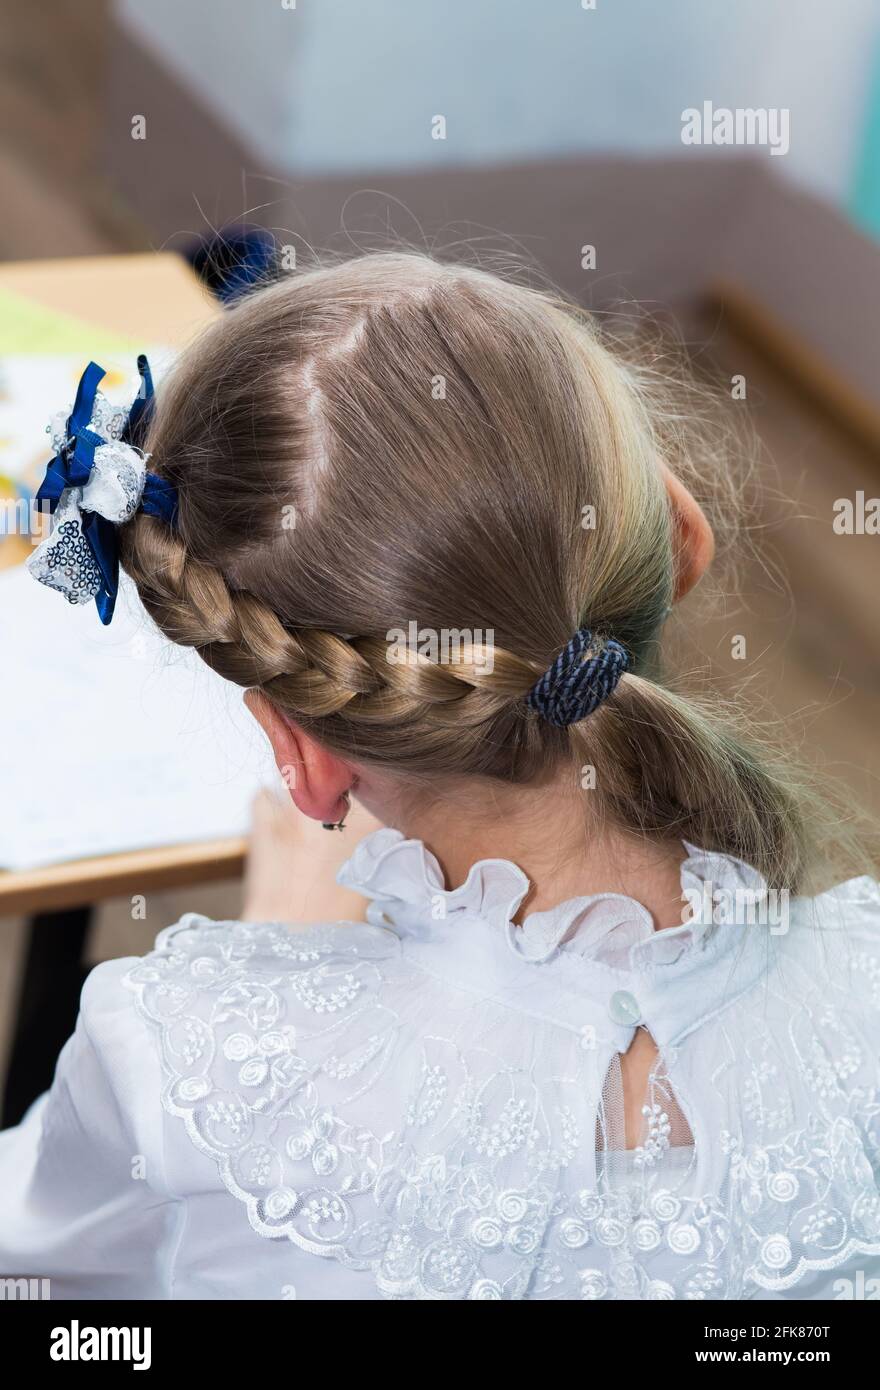 Peinado de una chica con una trenza alrededor de su cabeza y un lazo azul  de cerca. El peinado se hace con horquillas y una banda elástica. Sólo la  parte posterior de